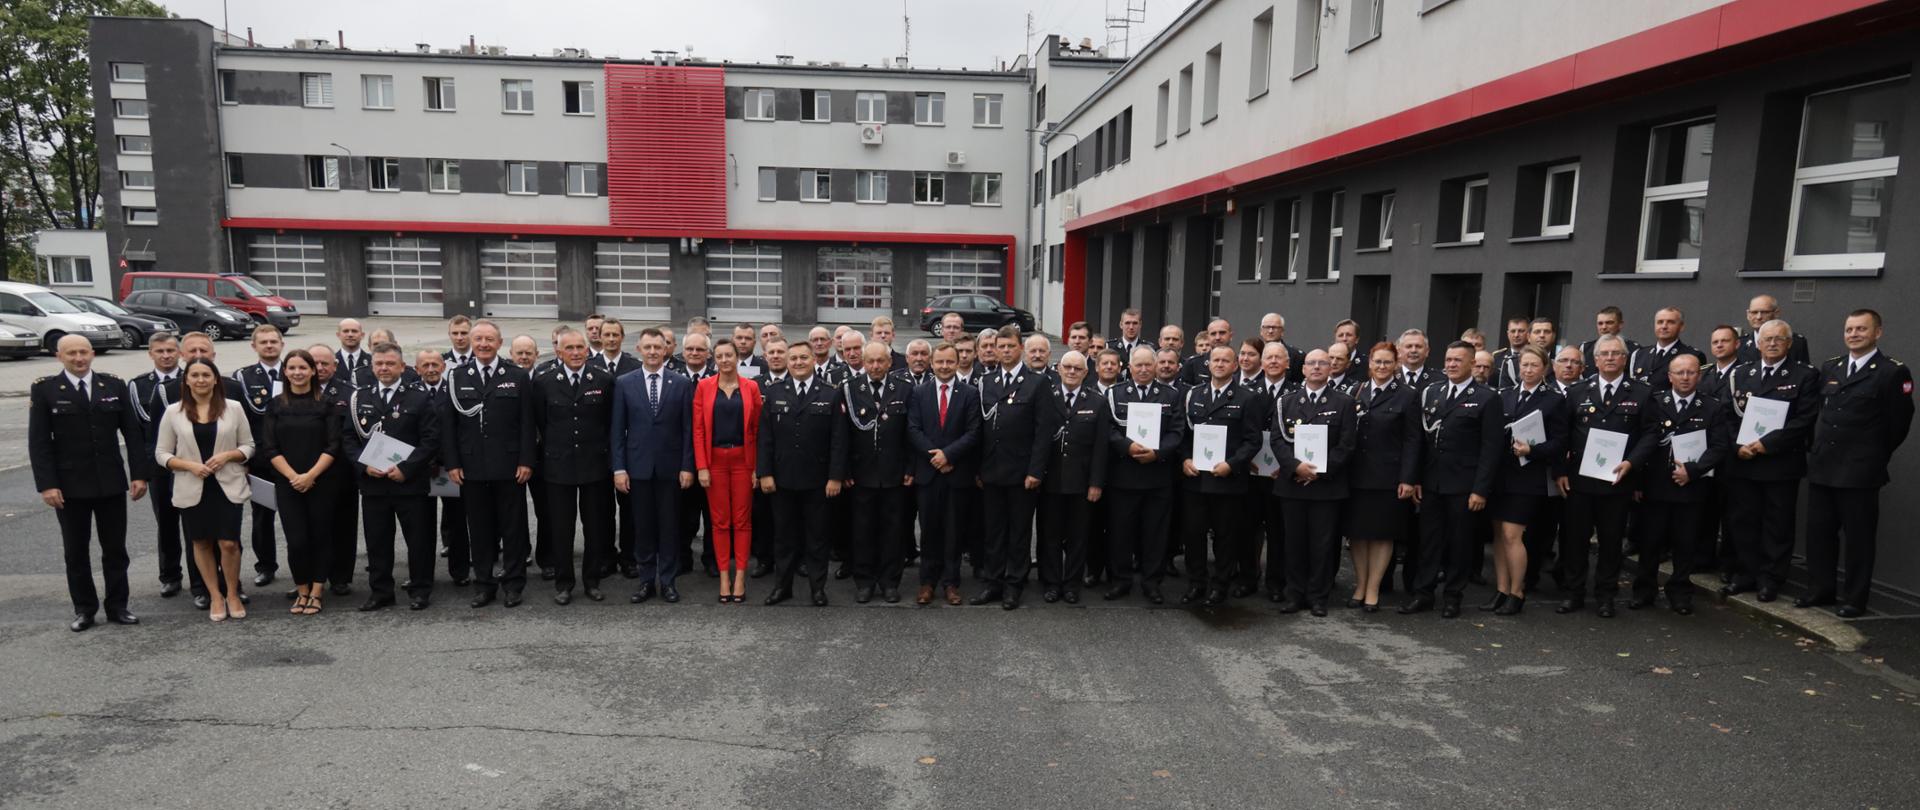 Zdjęcie przedstawia wszystkich uczestników uroczystego podpisania umów ws. dotacji Wojewódzkiego Funduszu Ochrony Środowiska i Gospodarki Wodnej w Opolu dla Ochotniczych Straży Pożarnych